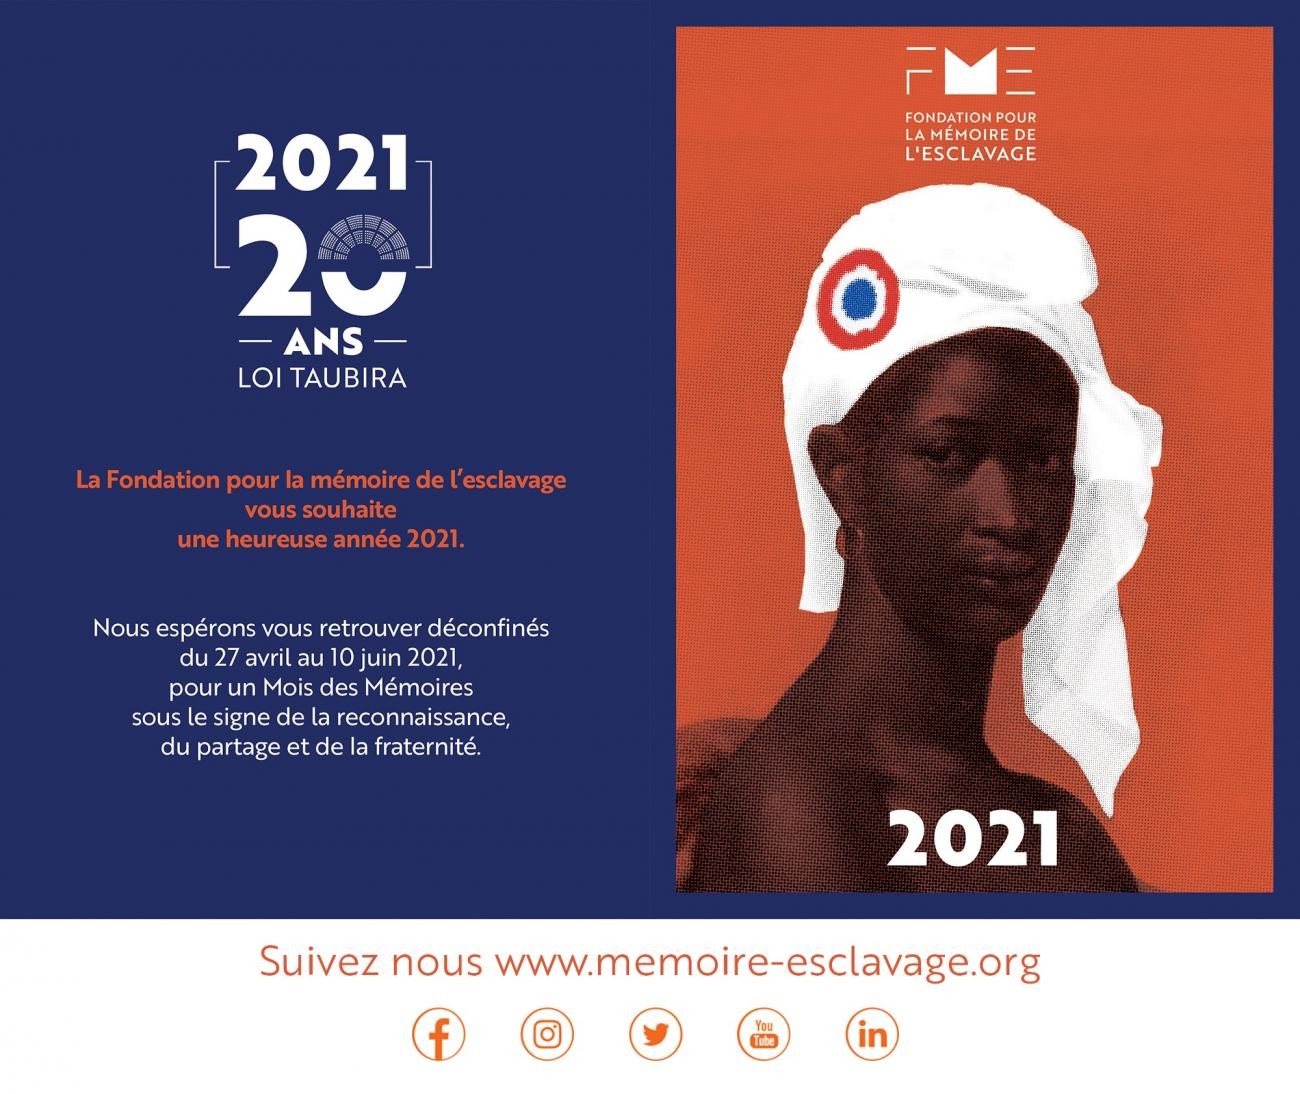 [MEMOIRE] Africa 50 obtient le label de la Fondation pour la Mémoire de l’Esclavage (FME) pour le Mois des Mémoires 2021